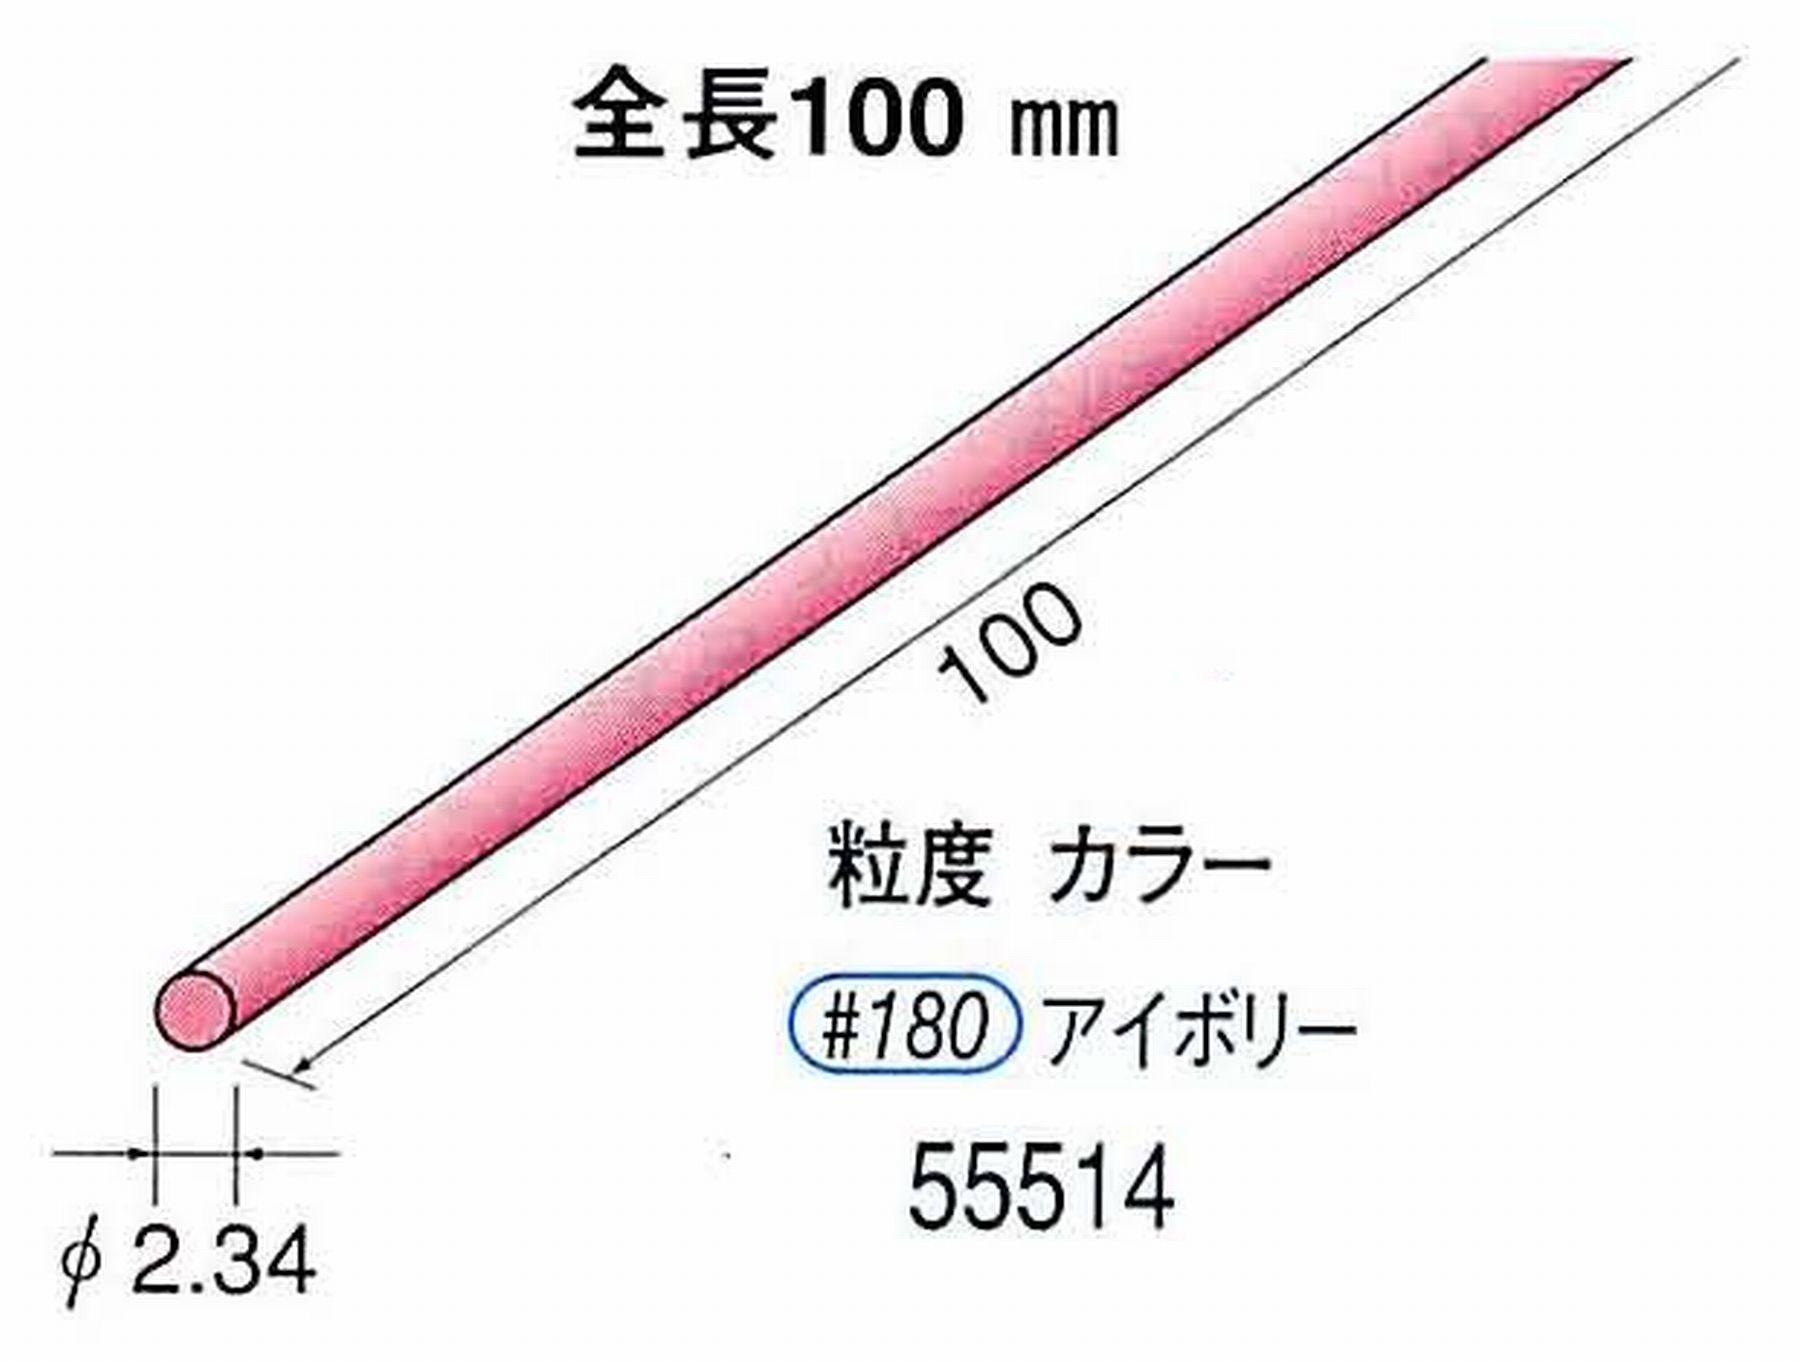 ナカニシ/NAKANISHI セラファイバー砥石 全長100mm アイボリー φ2.34mm 55514